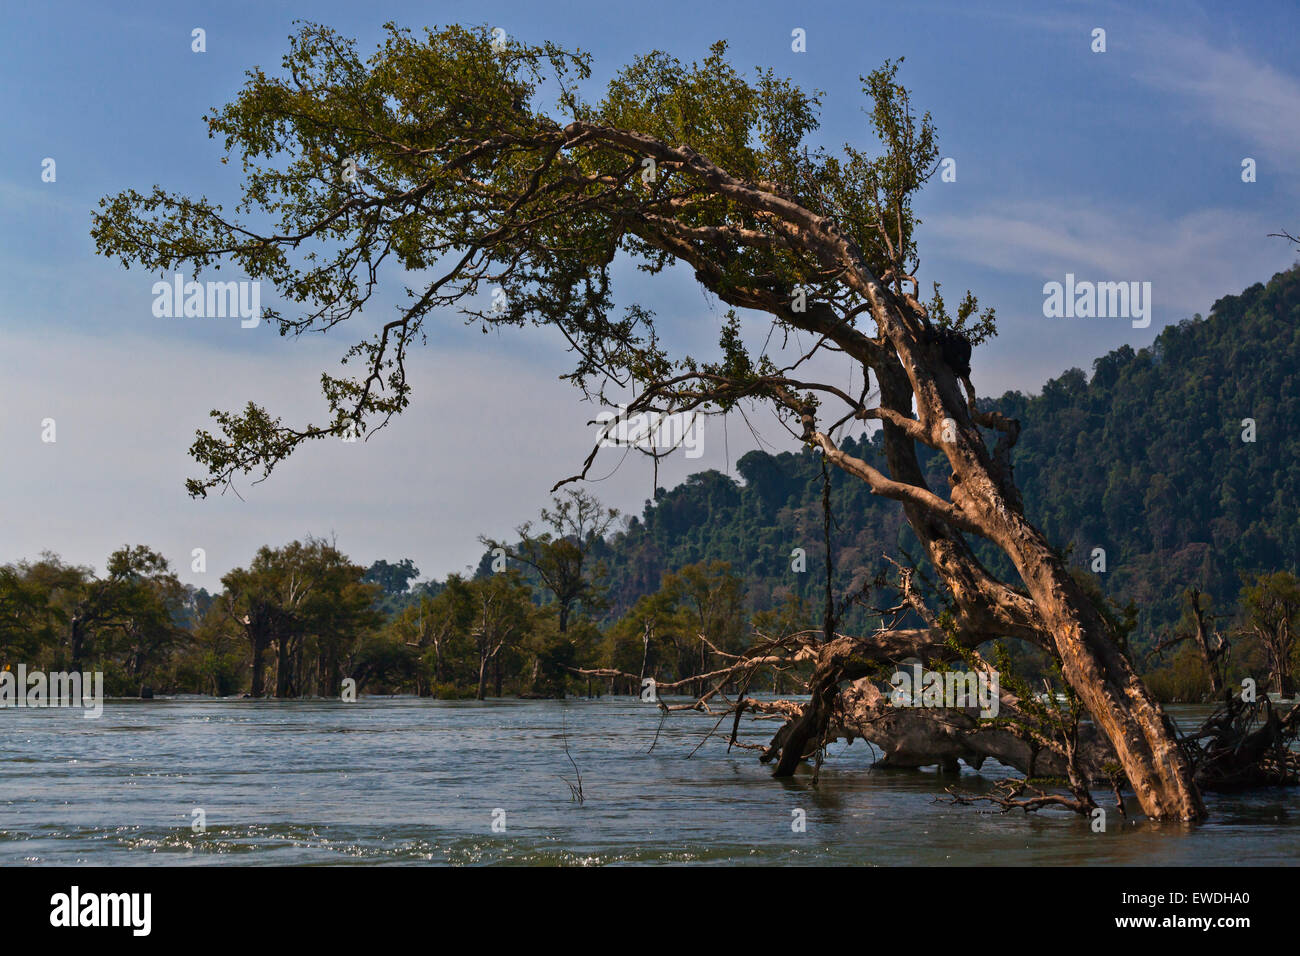 Le Cambodge est vu de la rivière du Mékong dans la région des Mille-Îles 4 (Si Phan Don) - Sud, Laos Banque D'Images